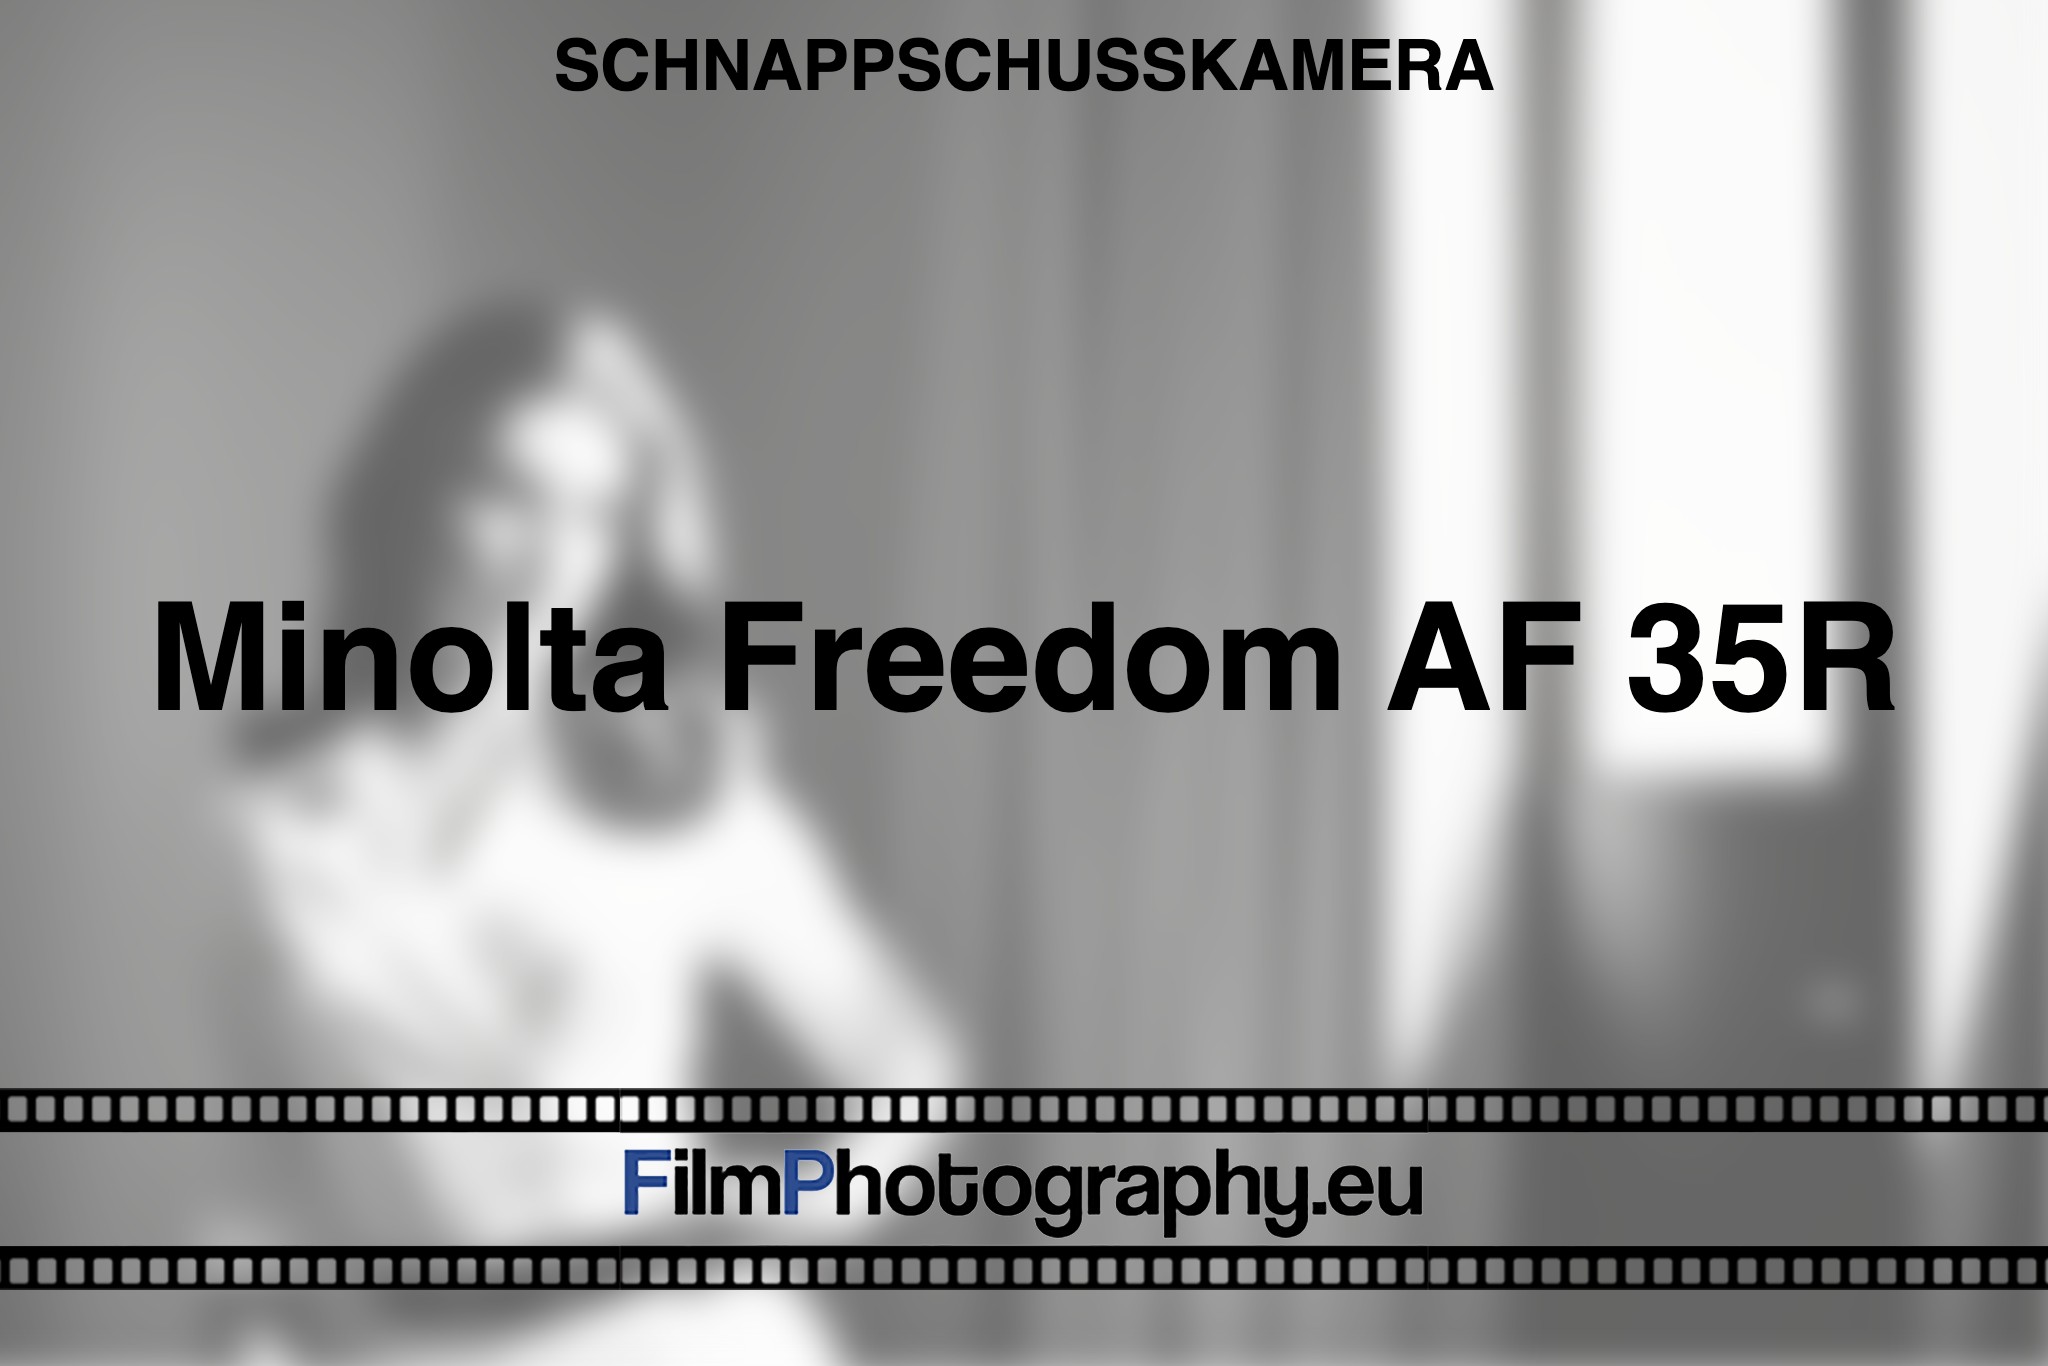 minolta-freedom-af-35r-schnappschusskamera-bnv